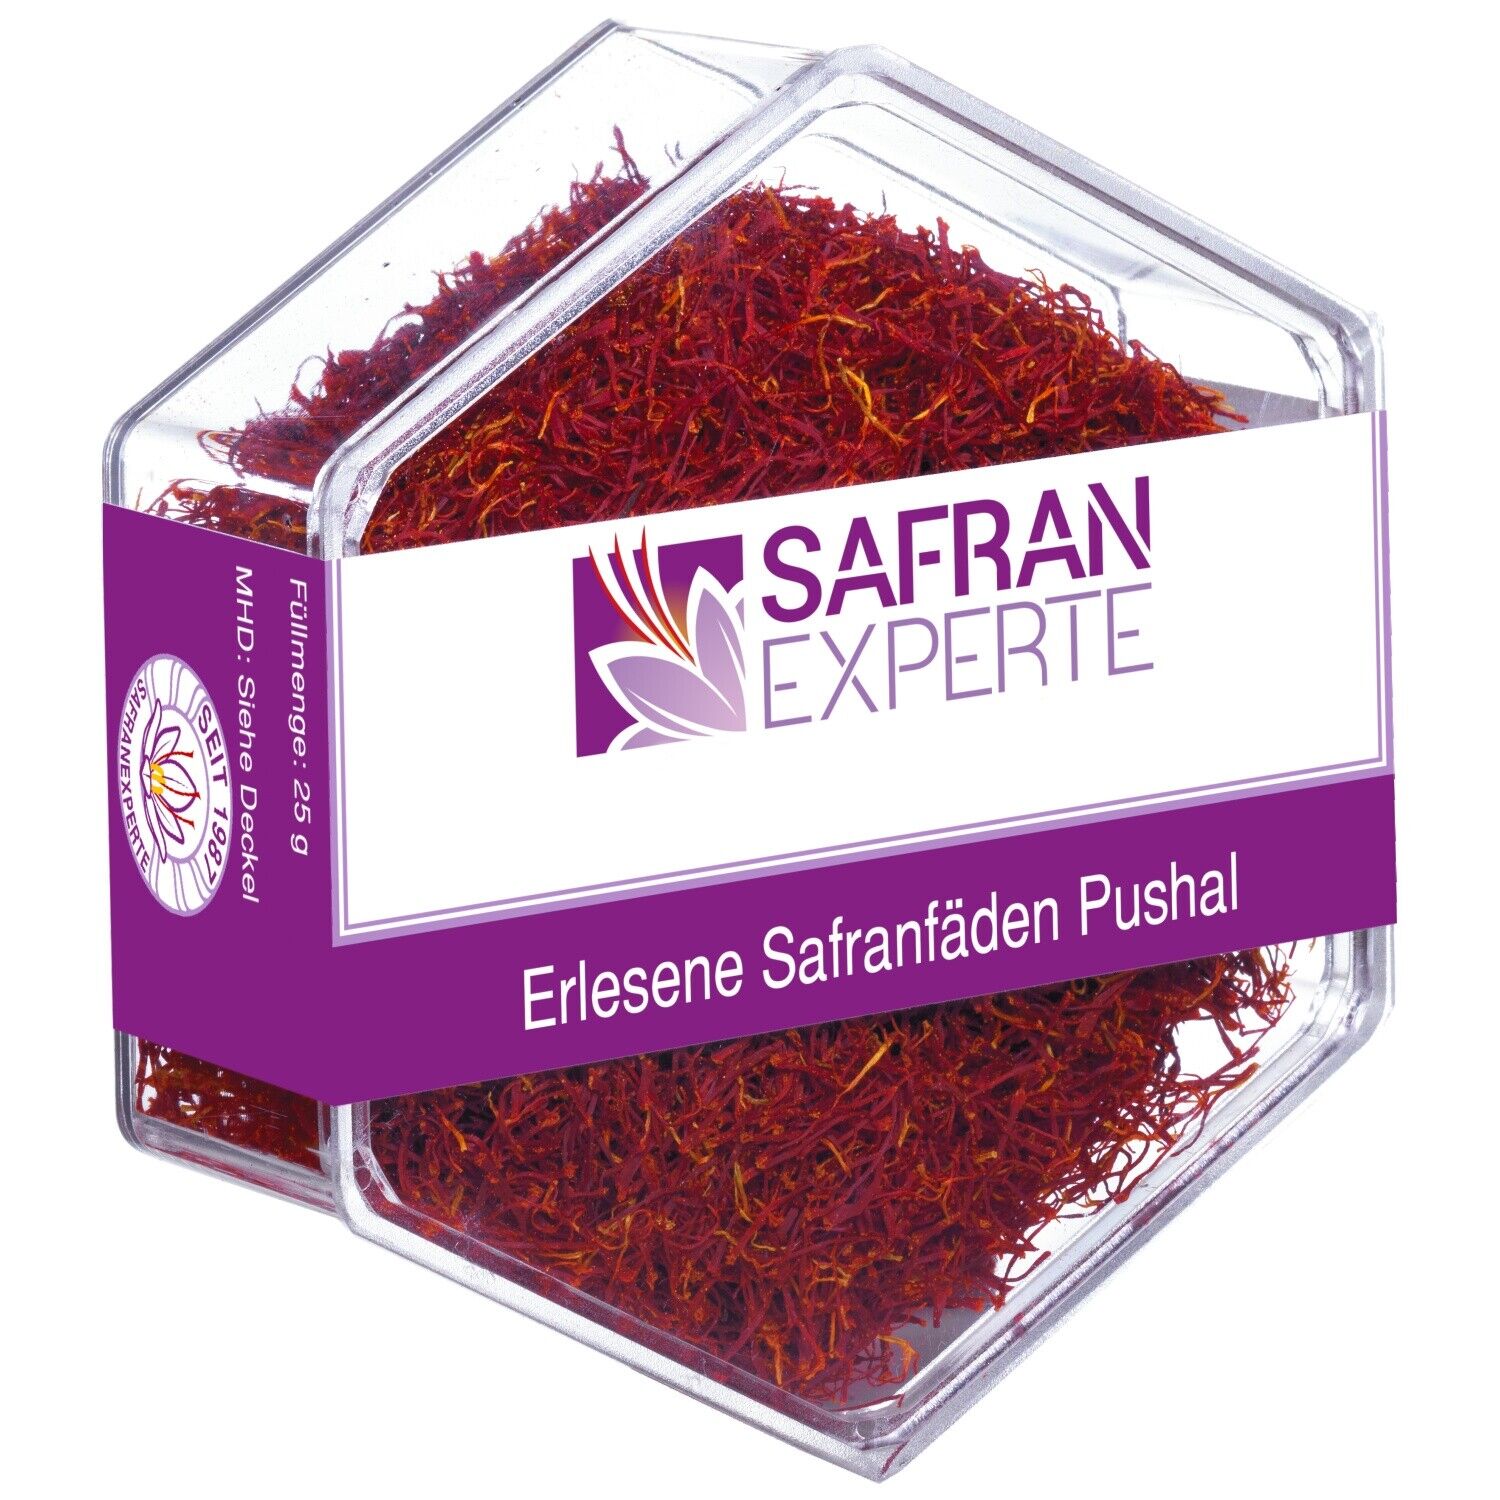 SAFRAN Fäden erlesene Qualität2 zum Kochen und Backen Geschenkidee Saffron Kesar Super speciale klassieke prijs